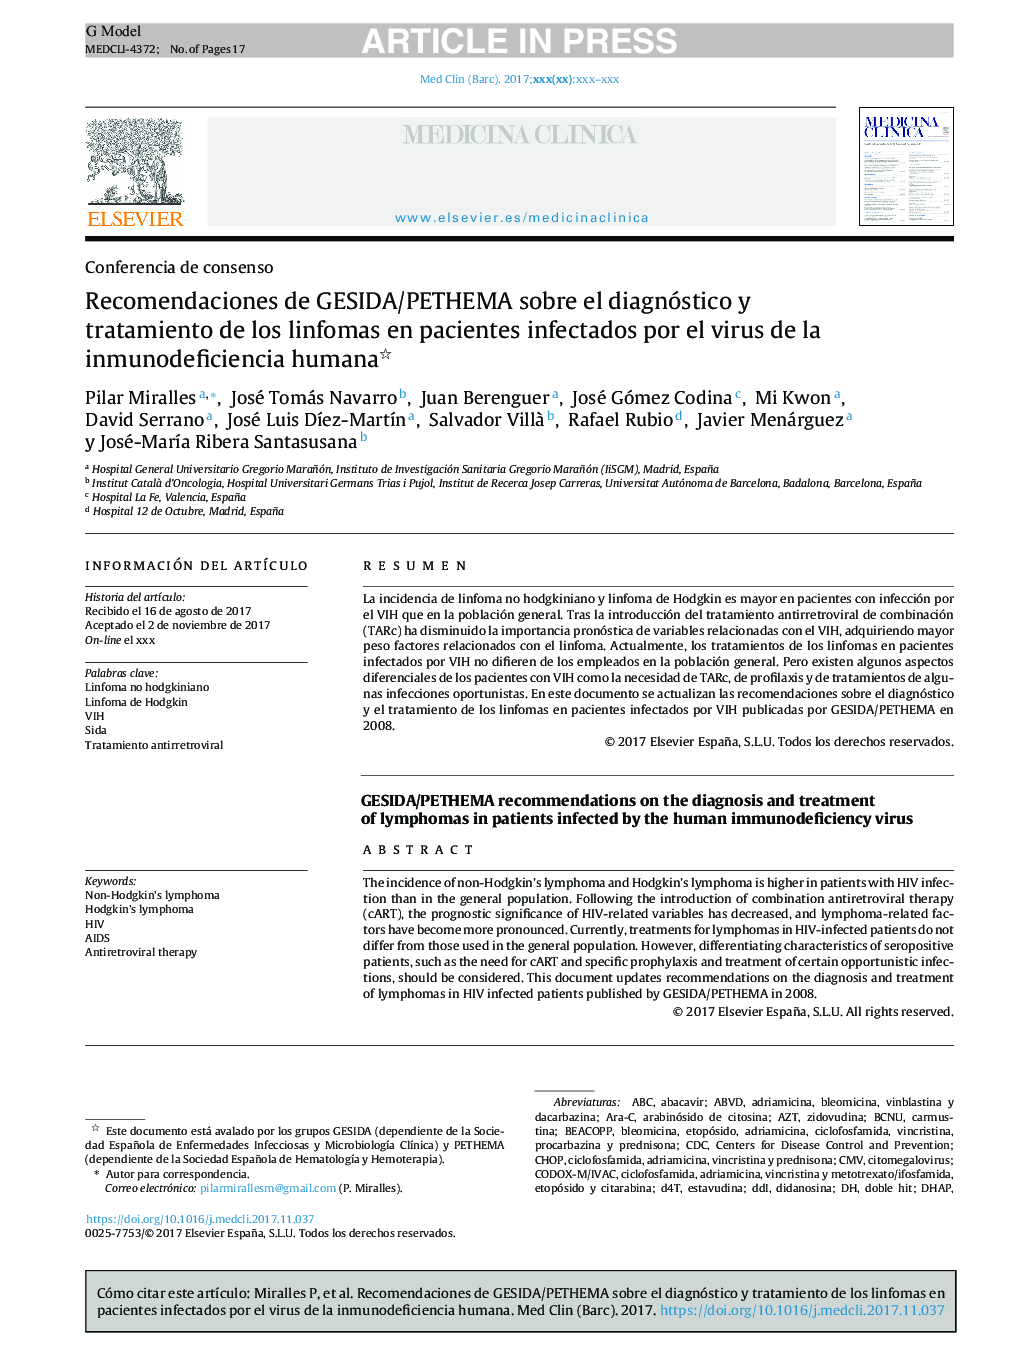 Recomendaciones de GESIDA/PETHEMA sobre el diagnóstico y tratamiento de los linfomas en pacientes infectados por el virus de la inmunodeficiencia humana